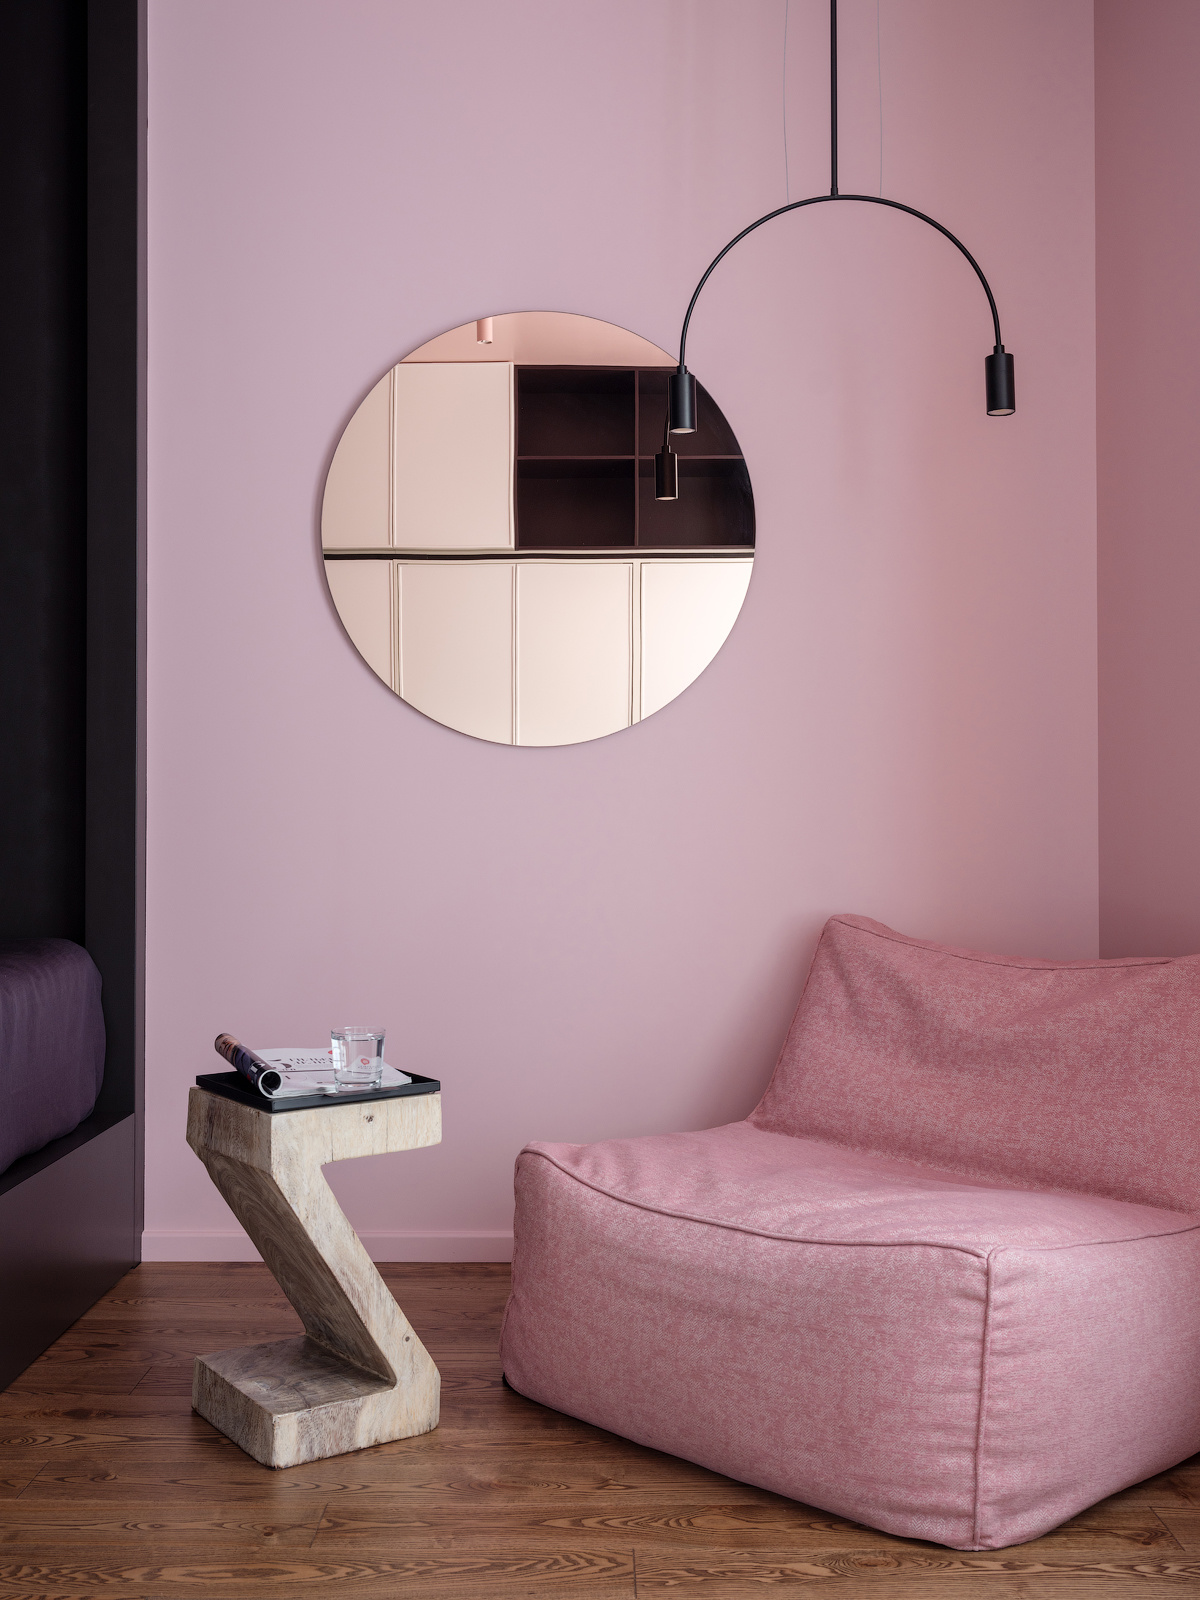 Bên ngoài phòng ngủ là góc thư giãn, đọc sách với chiếc ghế màu hồng nhỏ nhắn, êm ái, thiết kế tối giản không tay vịn kèm chiếc bàn hình chữ Z độc đáo. Trên tường treo một tấm gương tròn và đèn thả trần hình vòm cung đẹp mắt.